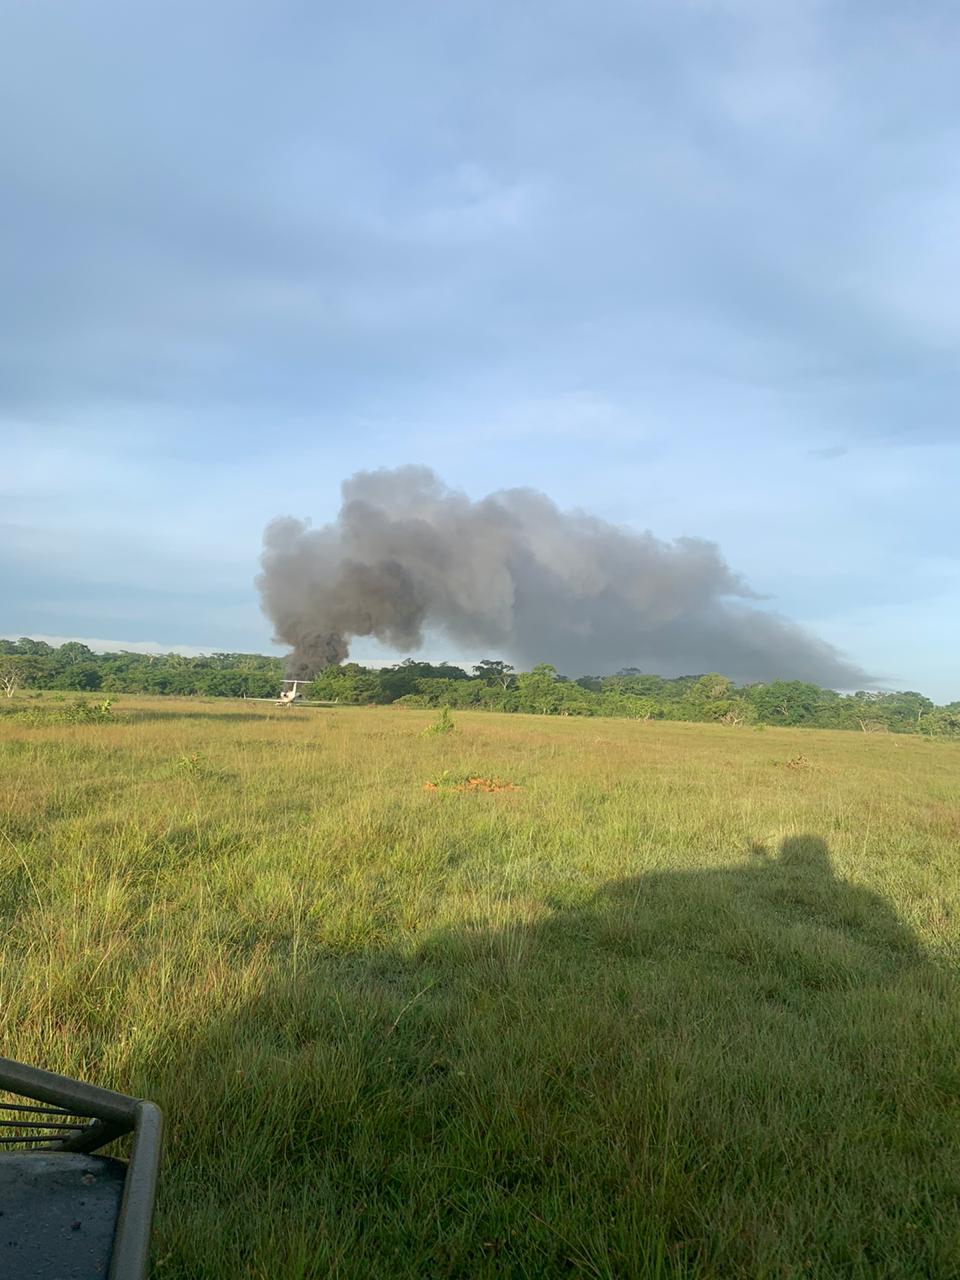 Ejército localiza aeronave incendiada en Petén